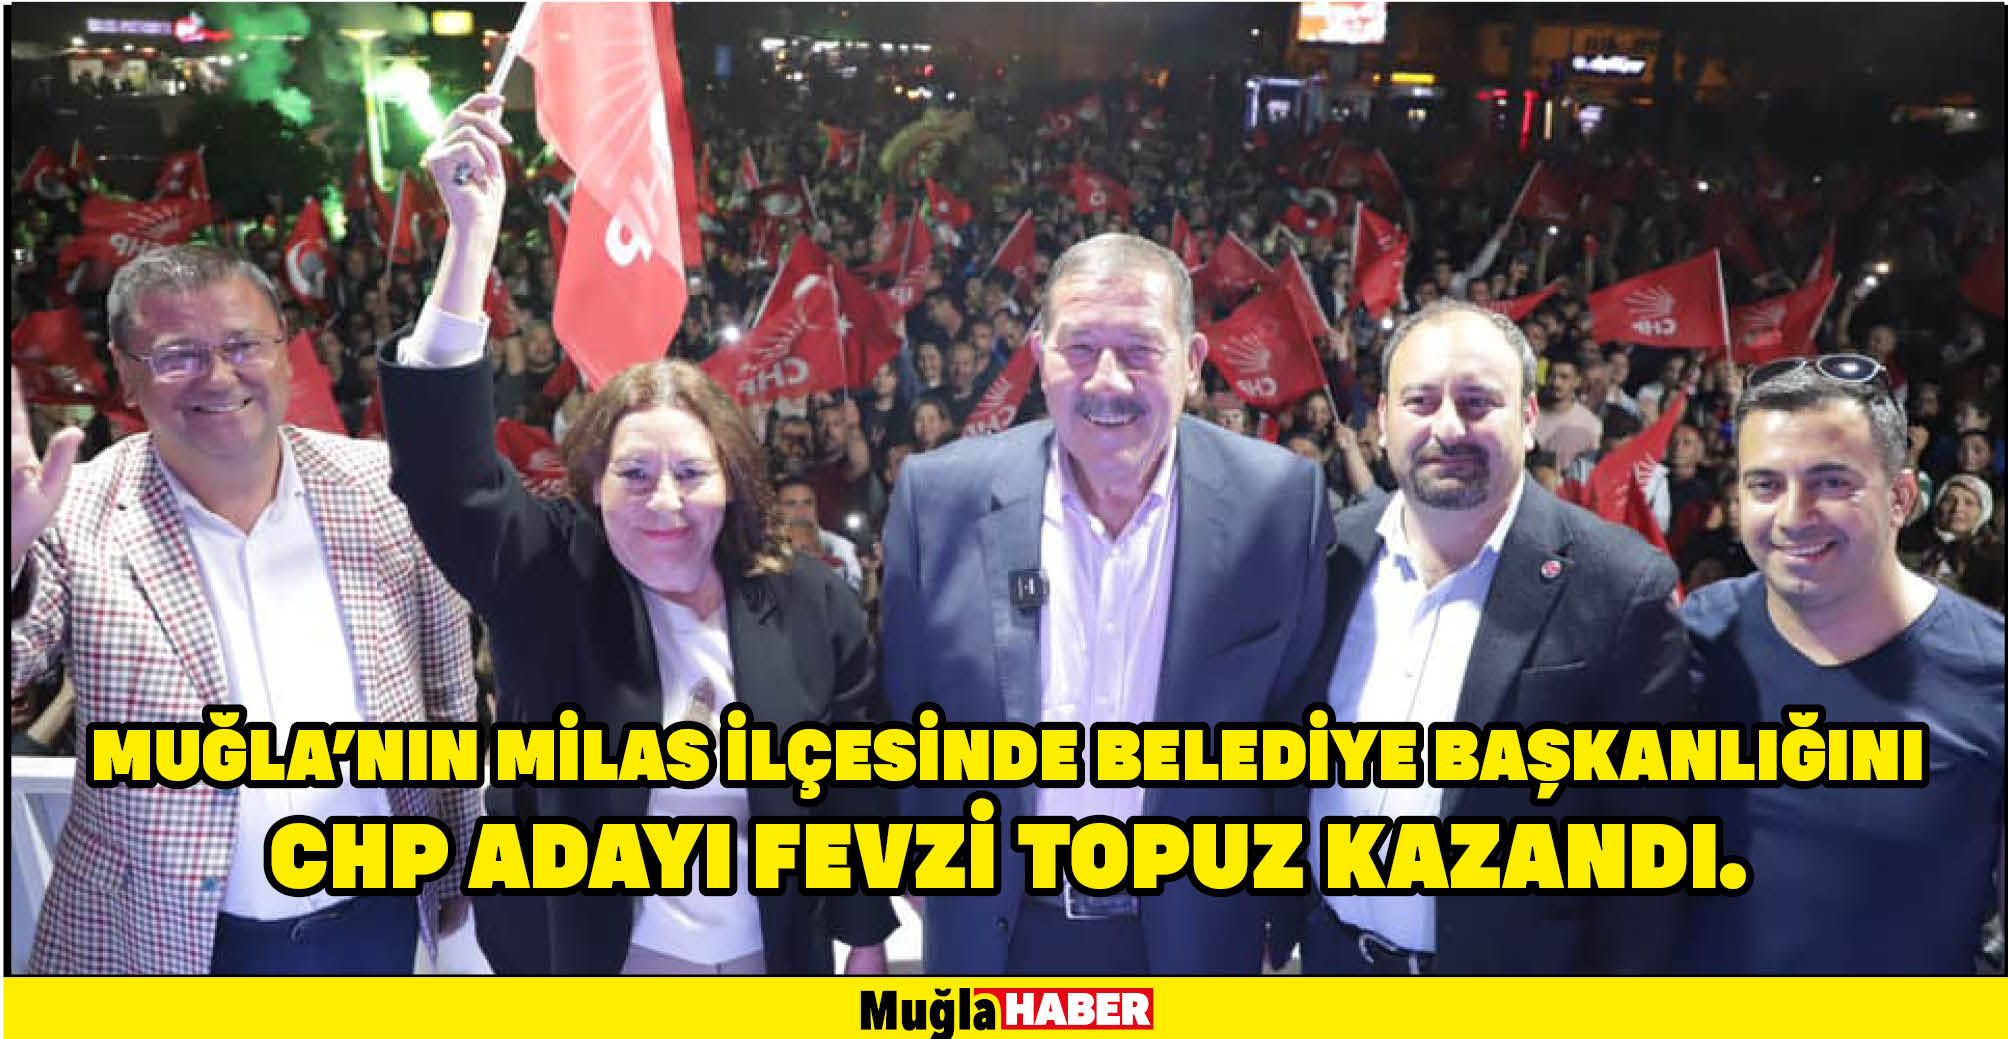 Muğla'nın Milas ilçesinde belediye başkanlığını kesin olmayan sonuçlara göre, CHP adayı Fevzi Topuz kazandı.